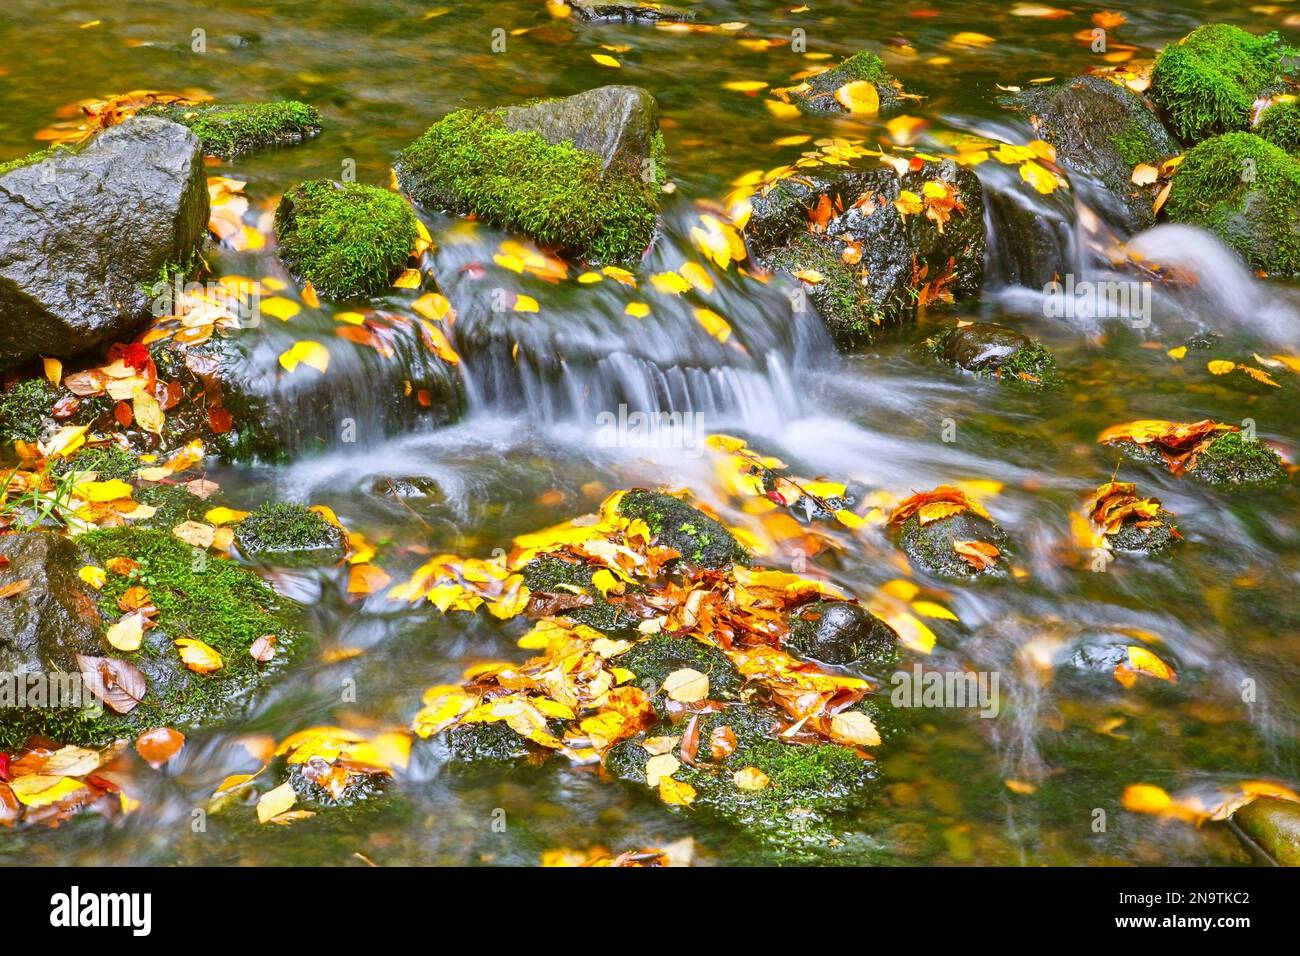 Ein sanfter Bach, der durch den Rhododendron-Garten von Crystal Springs fließt, mit herbstlich gefärbten Blättern, die im Wasser schwimmen Stockfoto